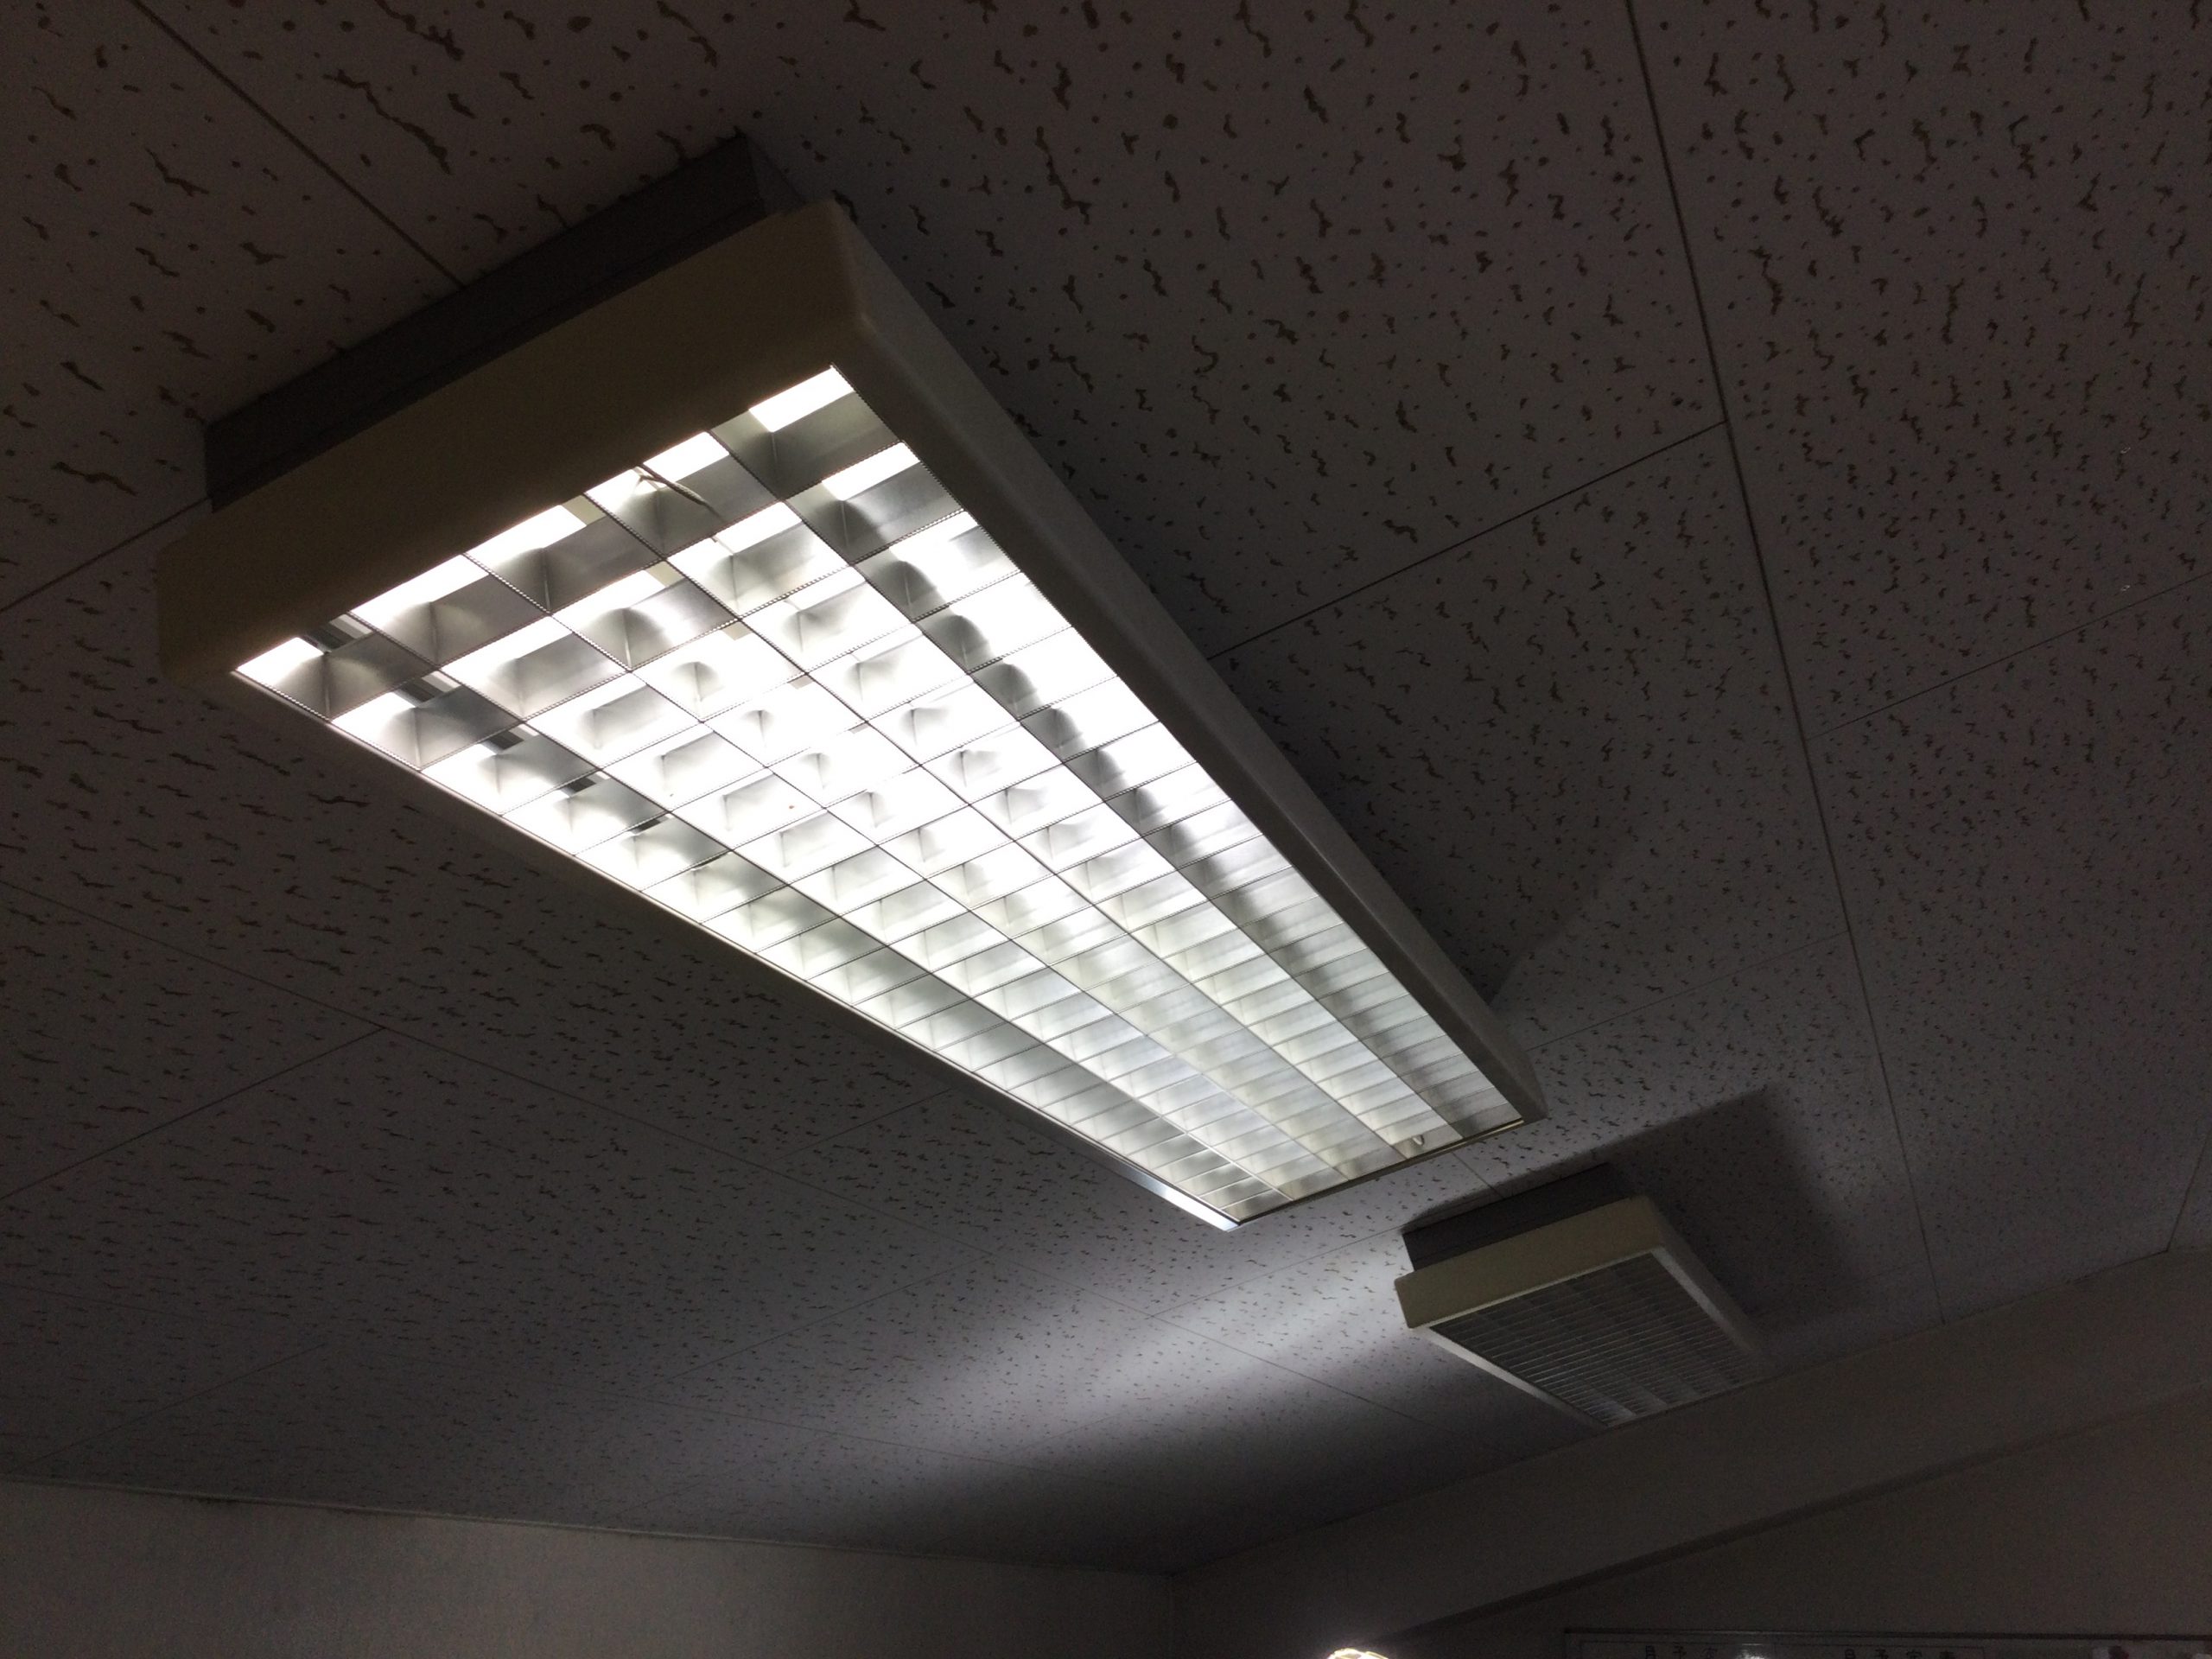 事務所の蛍光灯照明器器具をLED化したい（神奈川県川崎市の法人様より